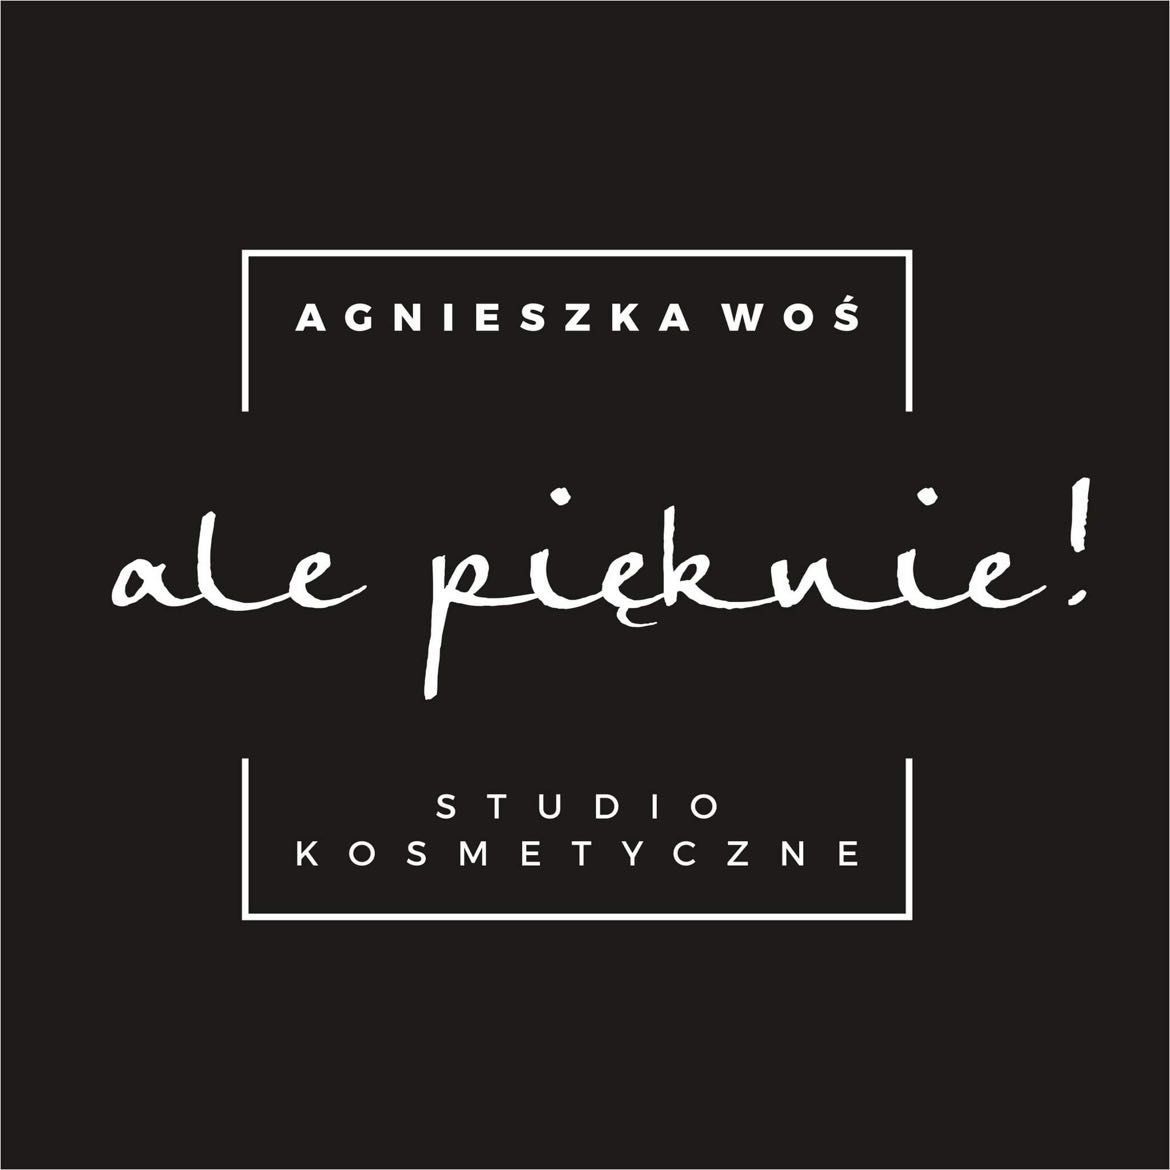 Ale pięknie! Studio kosmetyczne Agnieszka Woś, Szewska, 43a, 26-052, Nowiny